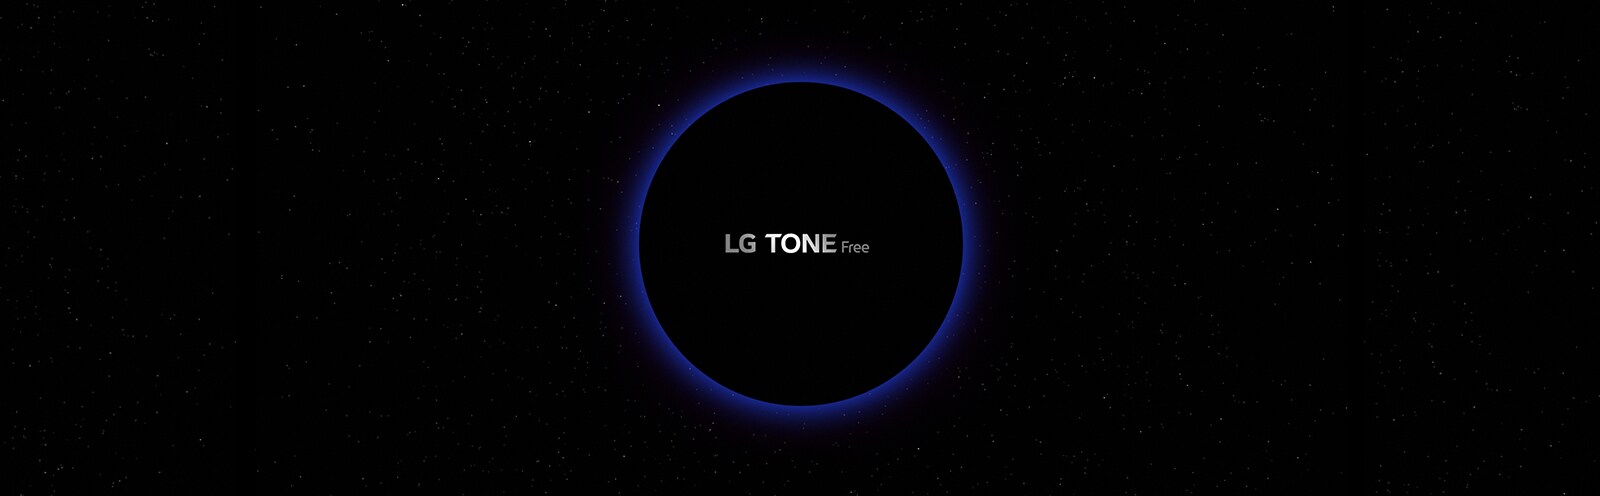 Εικόνα διαστήματος με έναν κύκλο με μπλε περίγραμμα, στο κέντρο του οποίου υπάρχει το κείμενο "LG TONE Free"